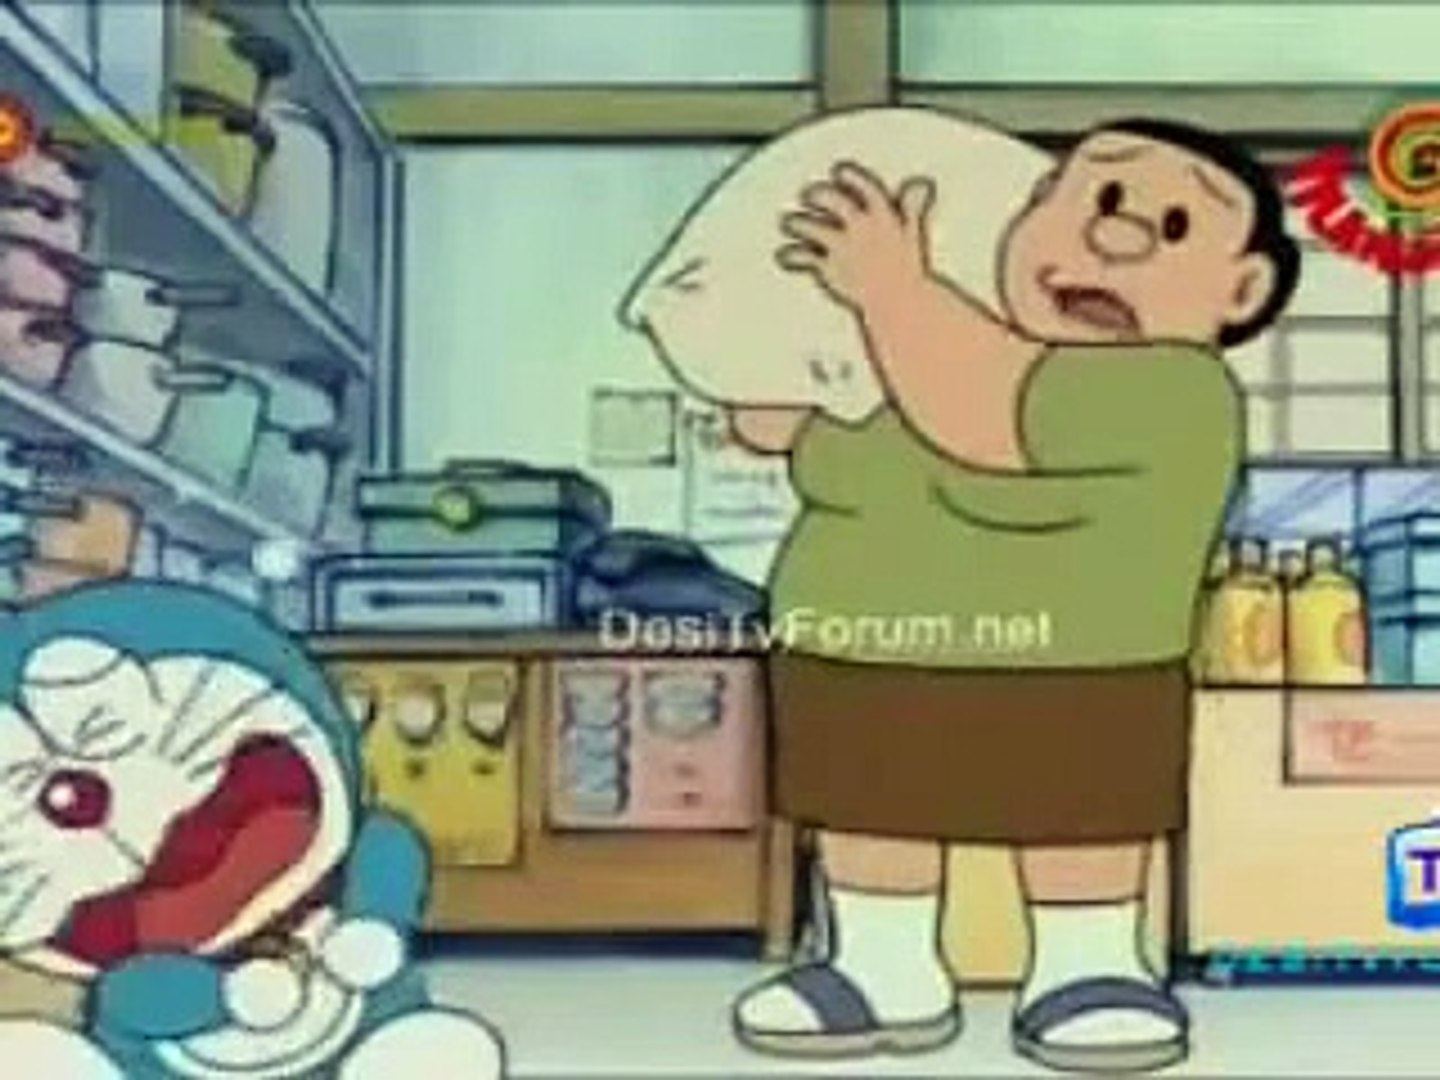 Watch Online Doraemon in hindi/urdu dubbed latest episodes 2015 - video  Dailymotion